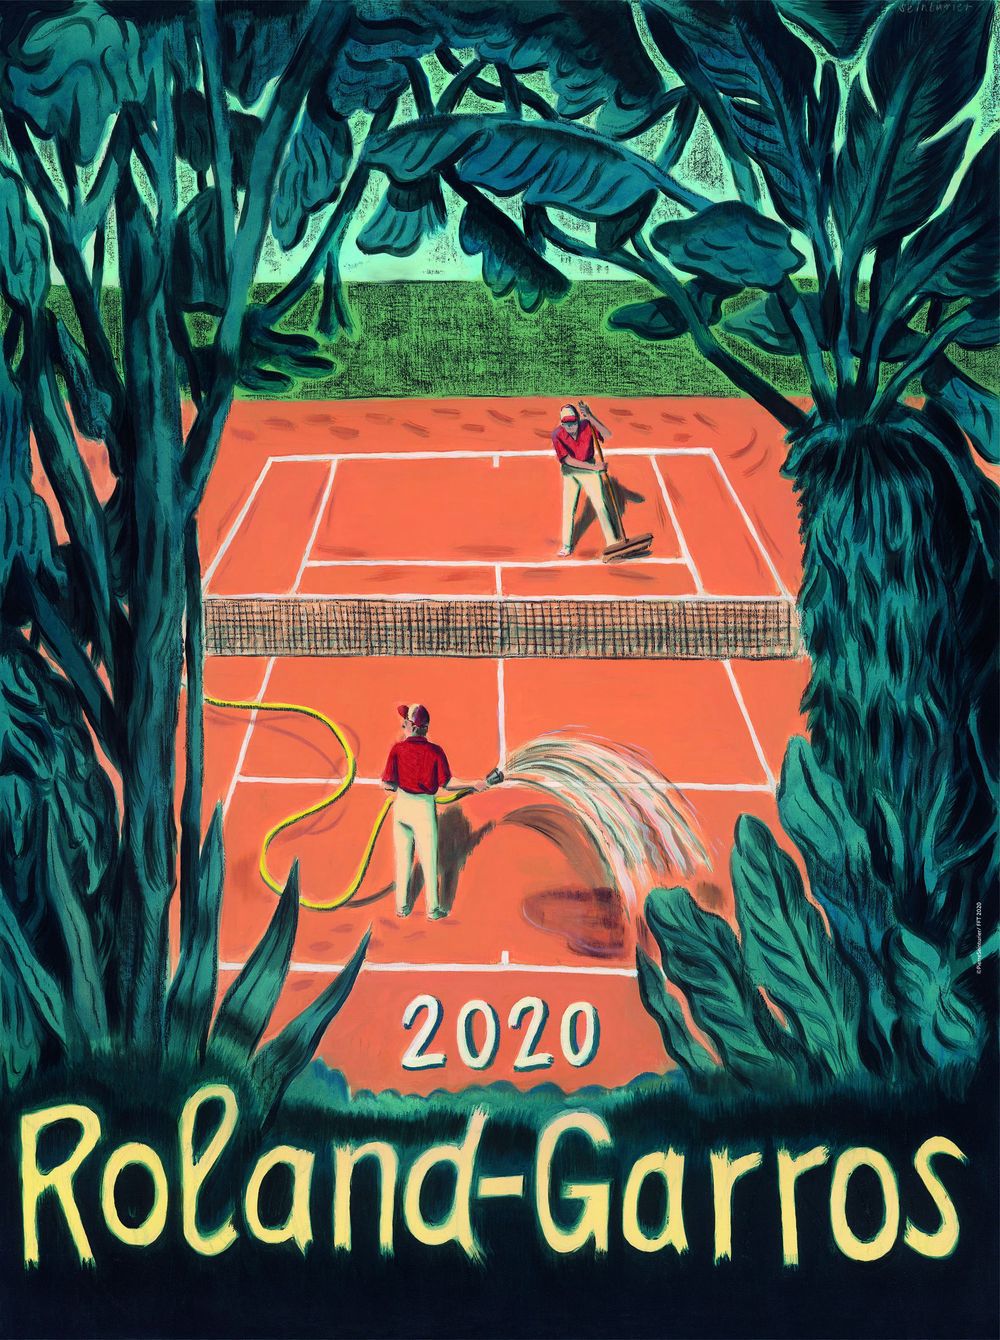 Affiche Roland Garros